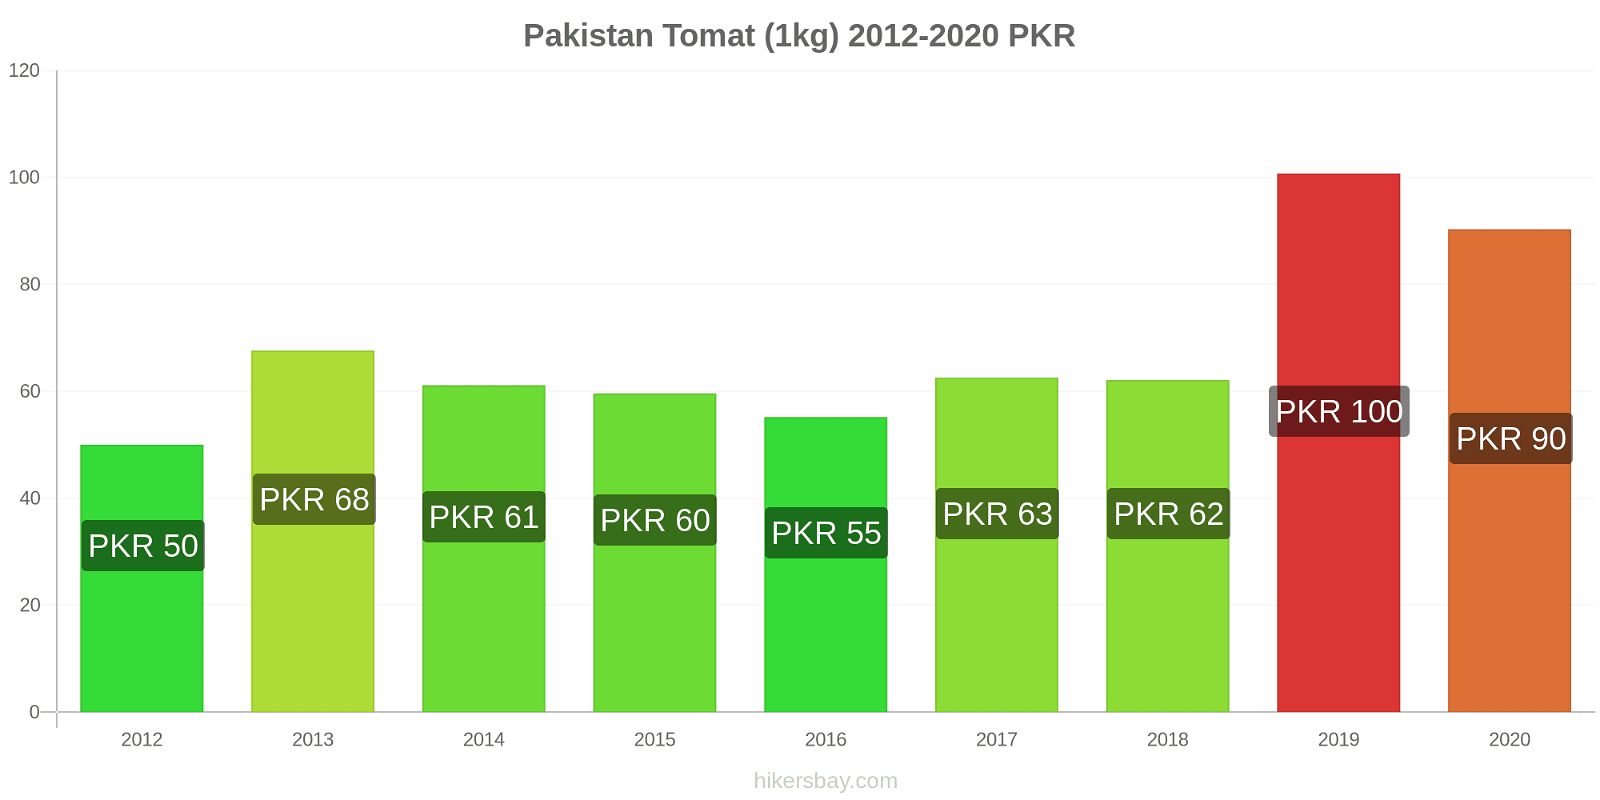 Pakistan prisændringer Tomat (1kg) hikersbay.com